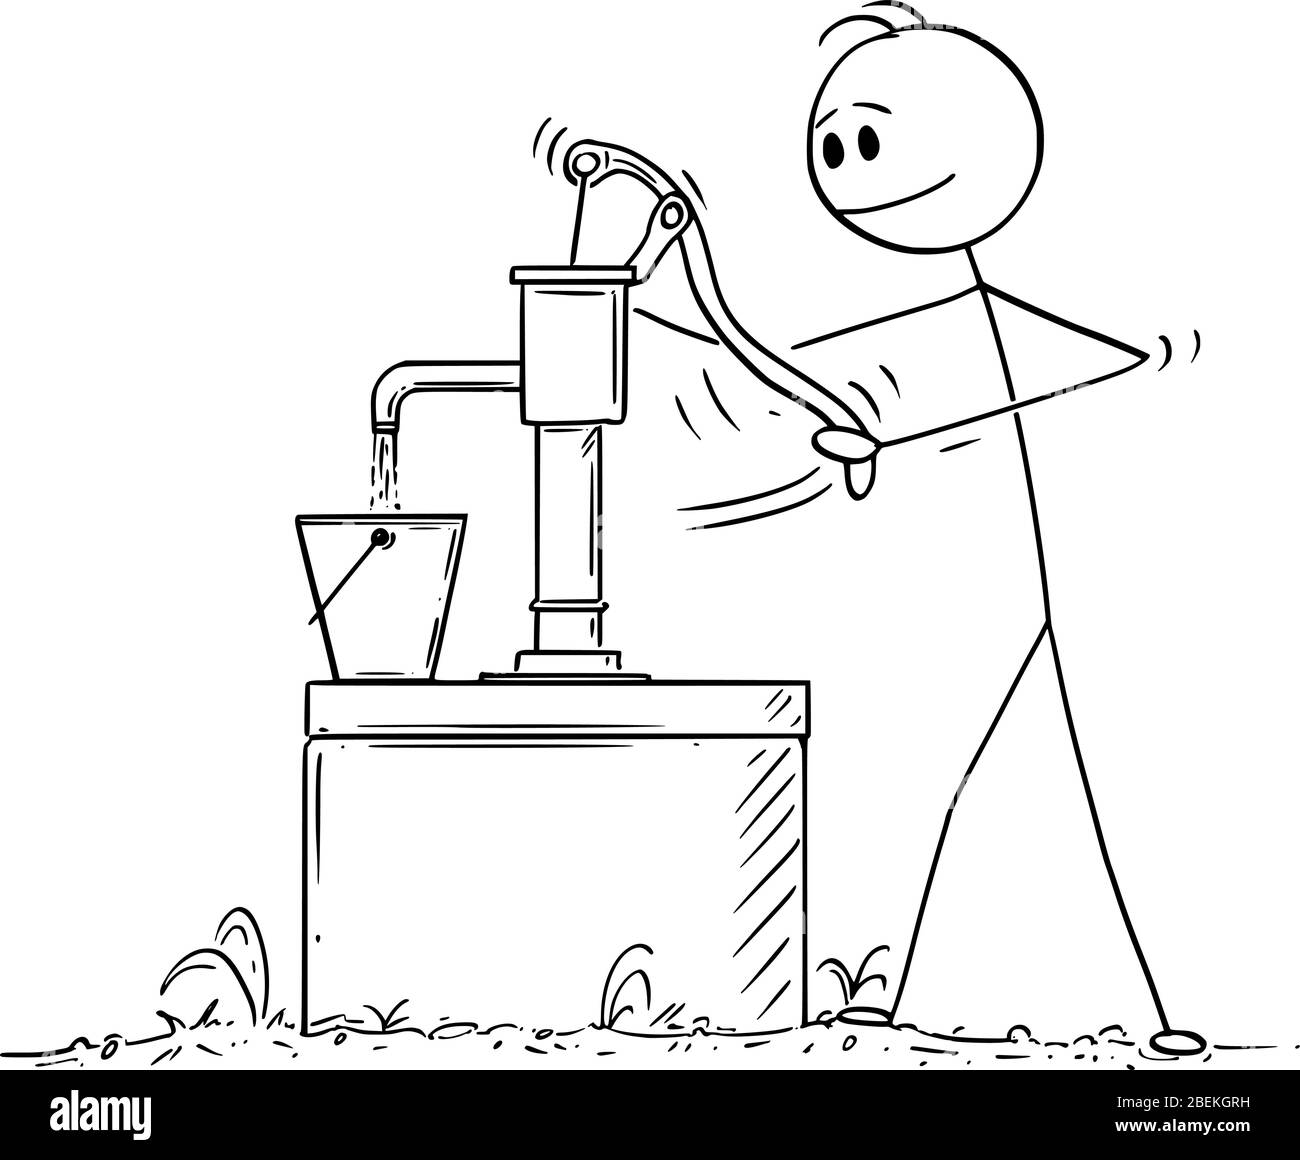 Vektor Cartoon Stick Figur Zeichnung konzeptionelle Illustration von Mann oder Landwirt Pumpen oder Wasserziehen aus gut. Stock Vektor